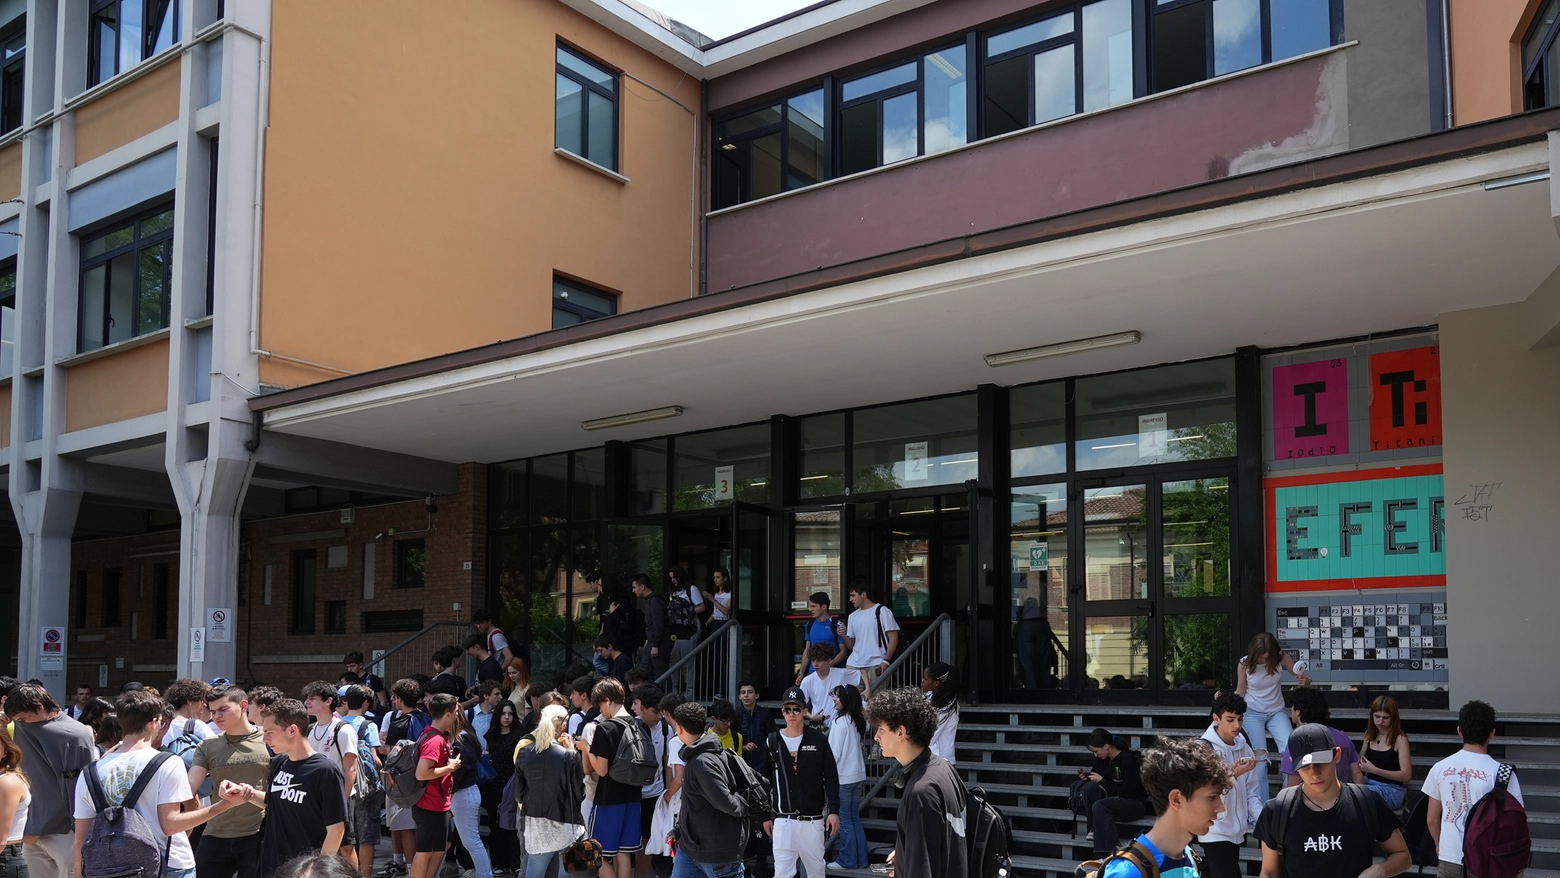 Studenti in uscita dalle scuole Fermi di Modena